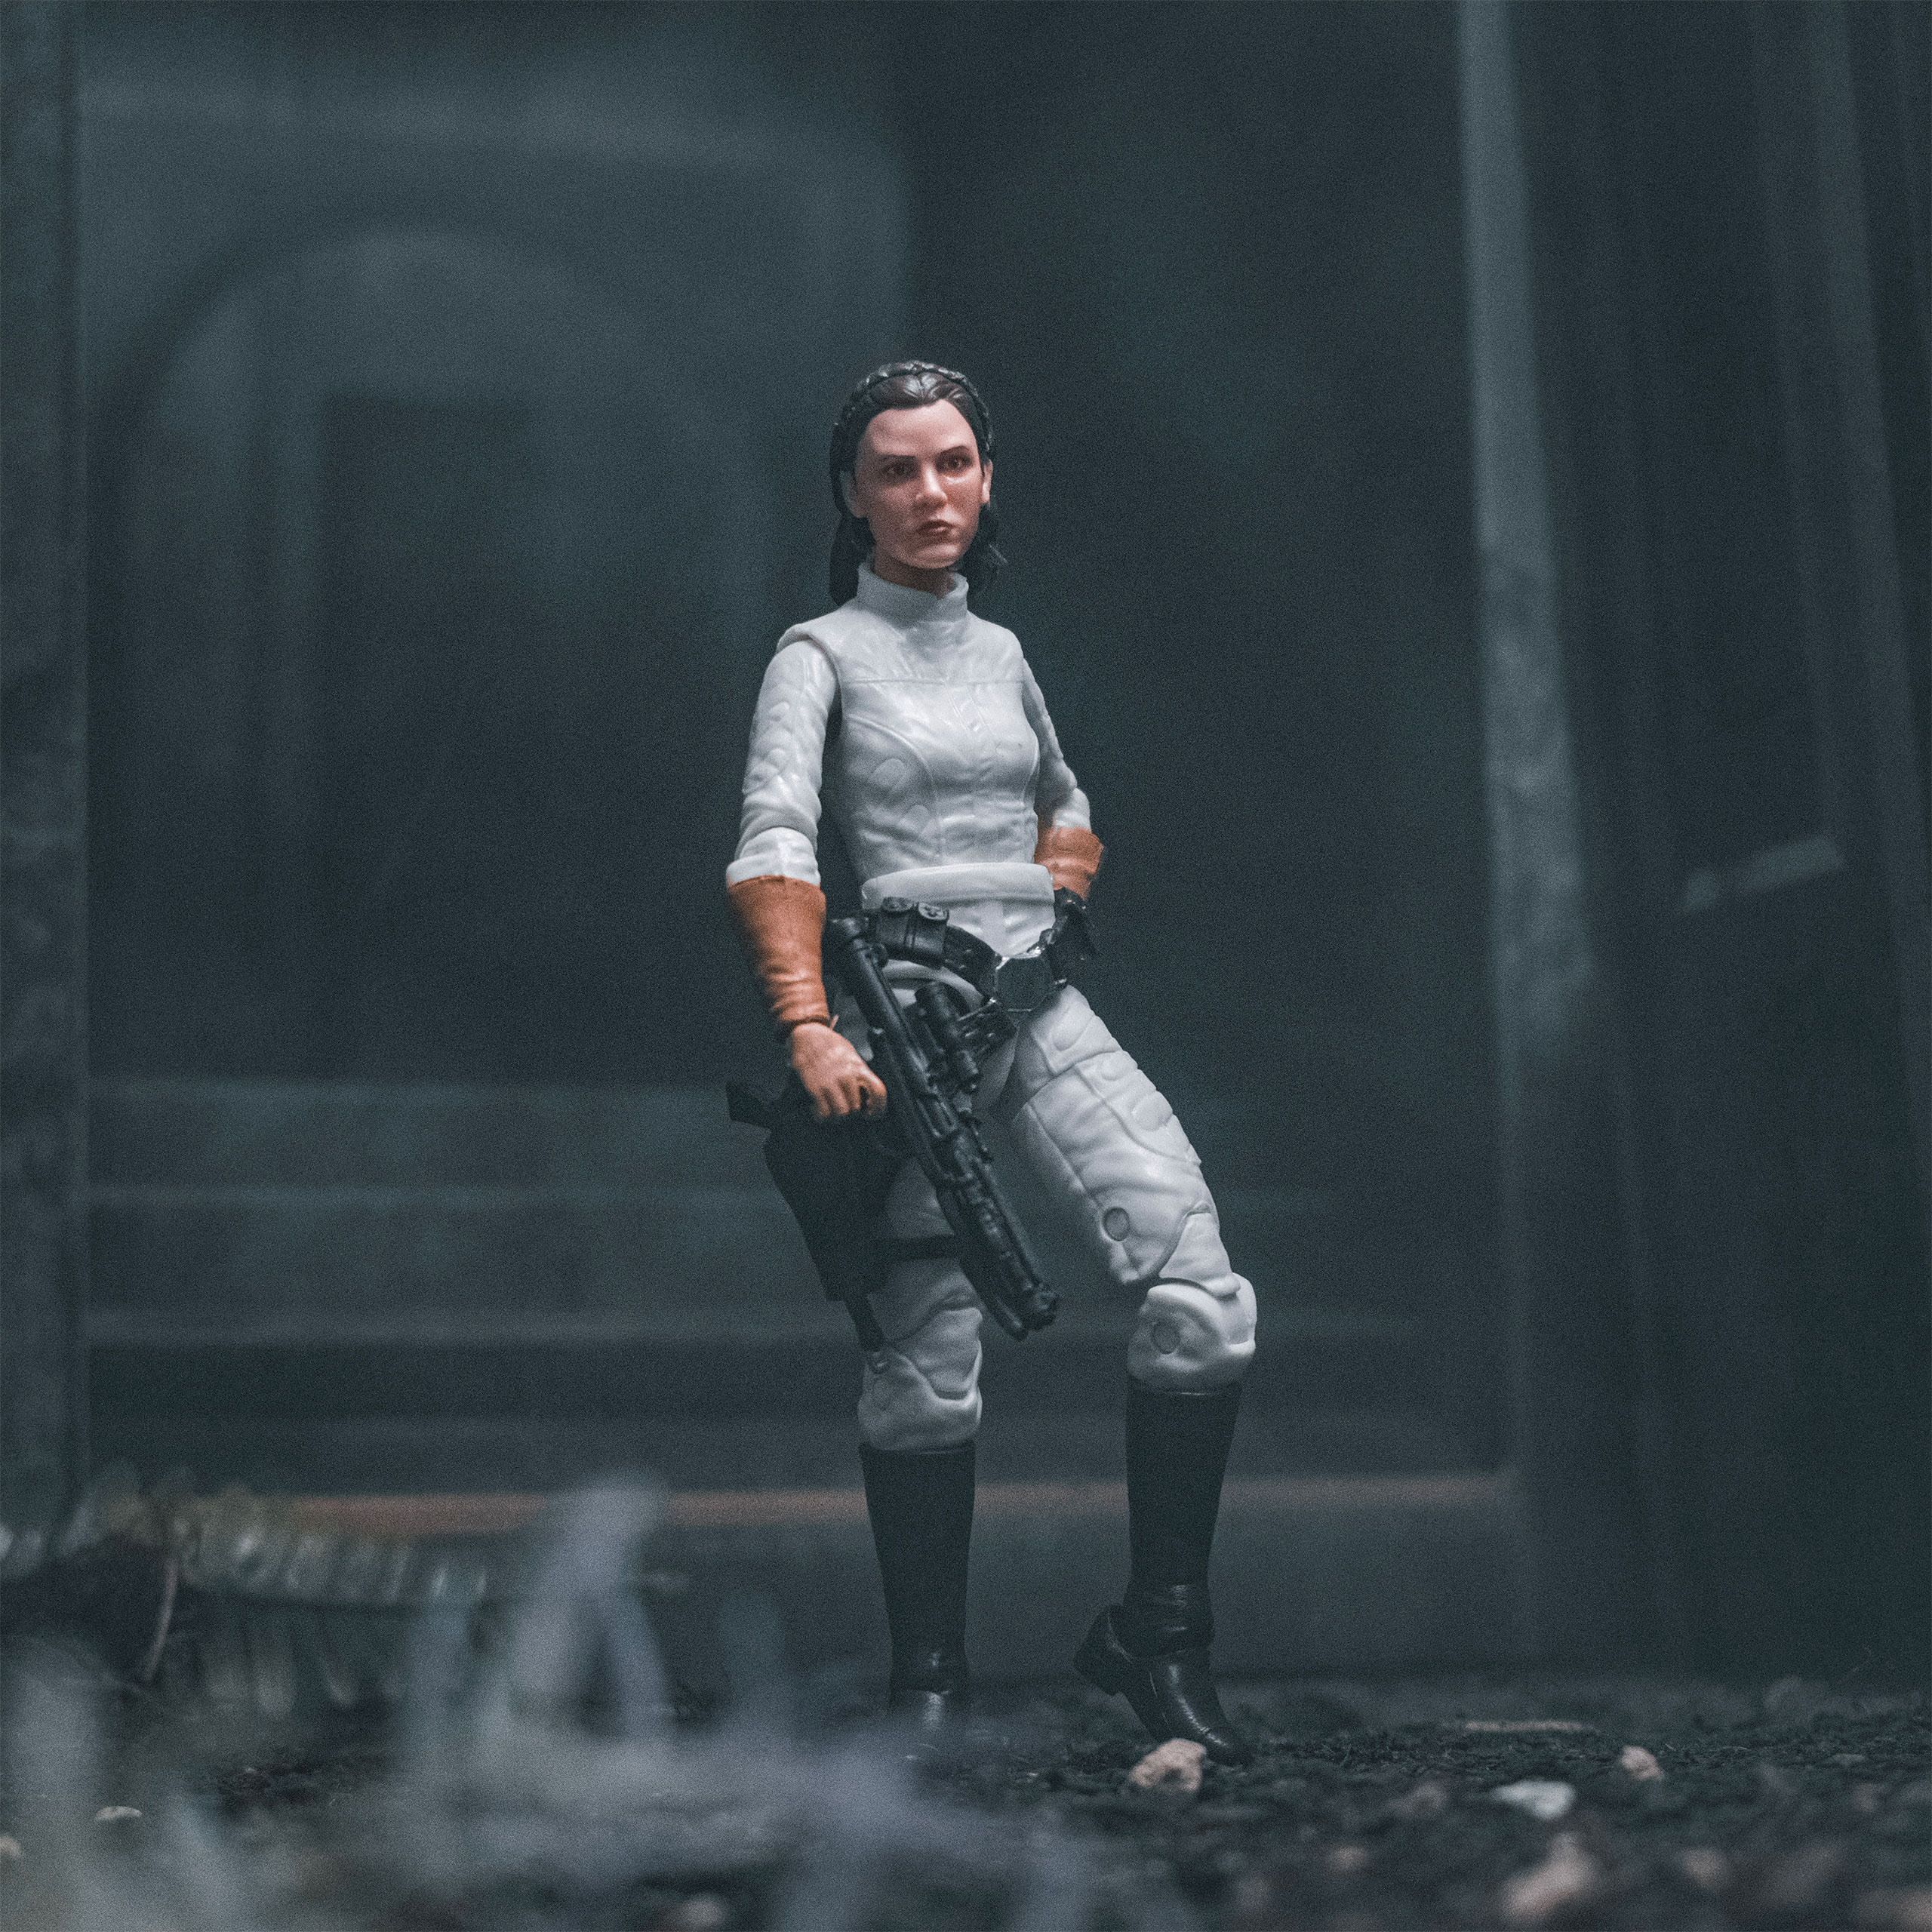 Star Wars - Prinzessin Leia Actionfigur